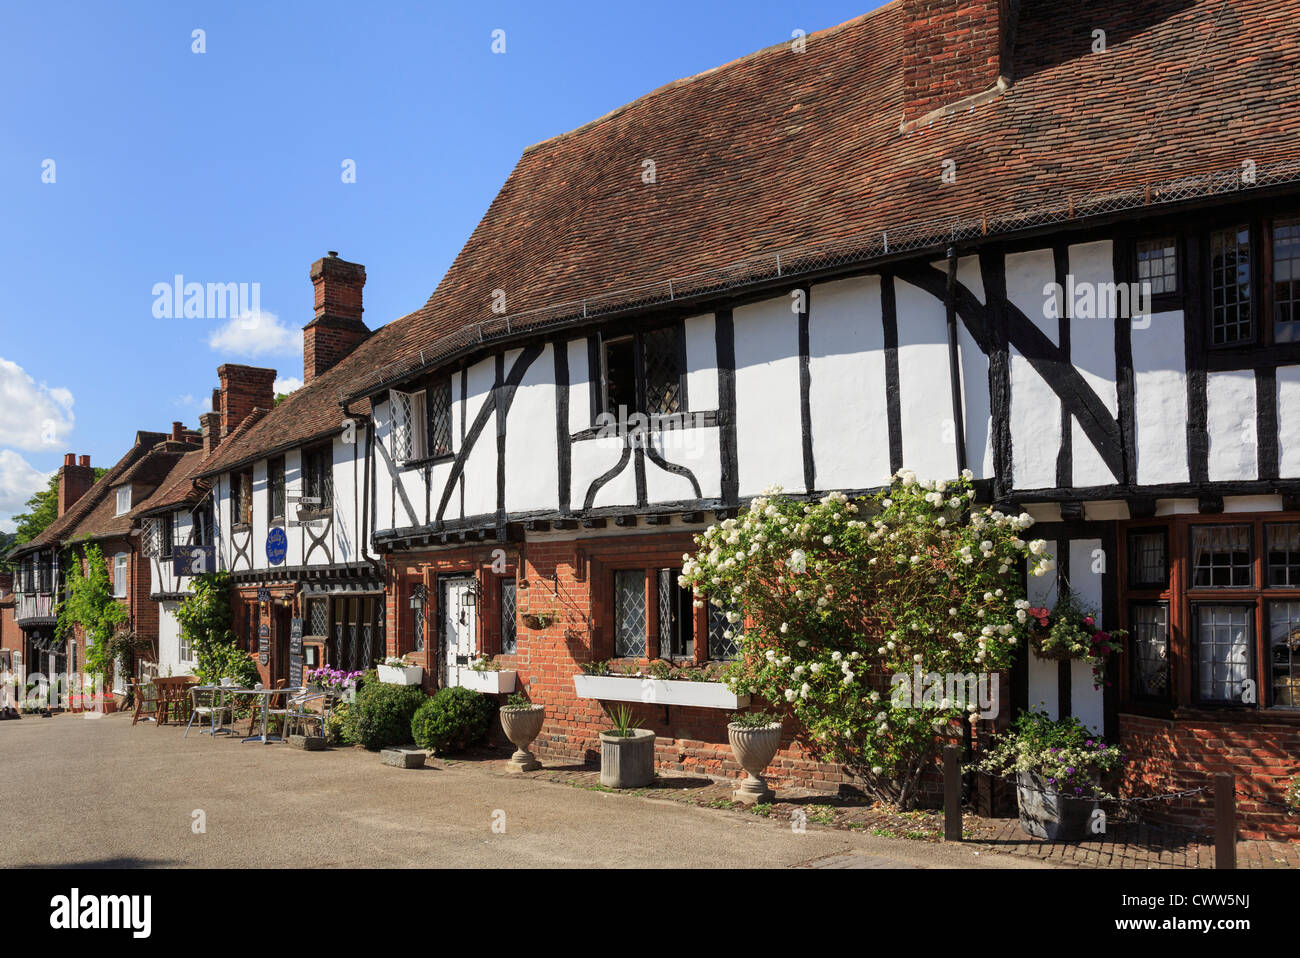 Rangée de maisons à pans de bois dans la jolie Tudor médiévale et pittoresque village du Kent square sur le chemin des pèlerins. Chilham, Kent, Angleterre, Royaume-Uni, Angleterre Banque D'Images